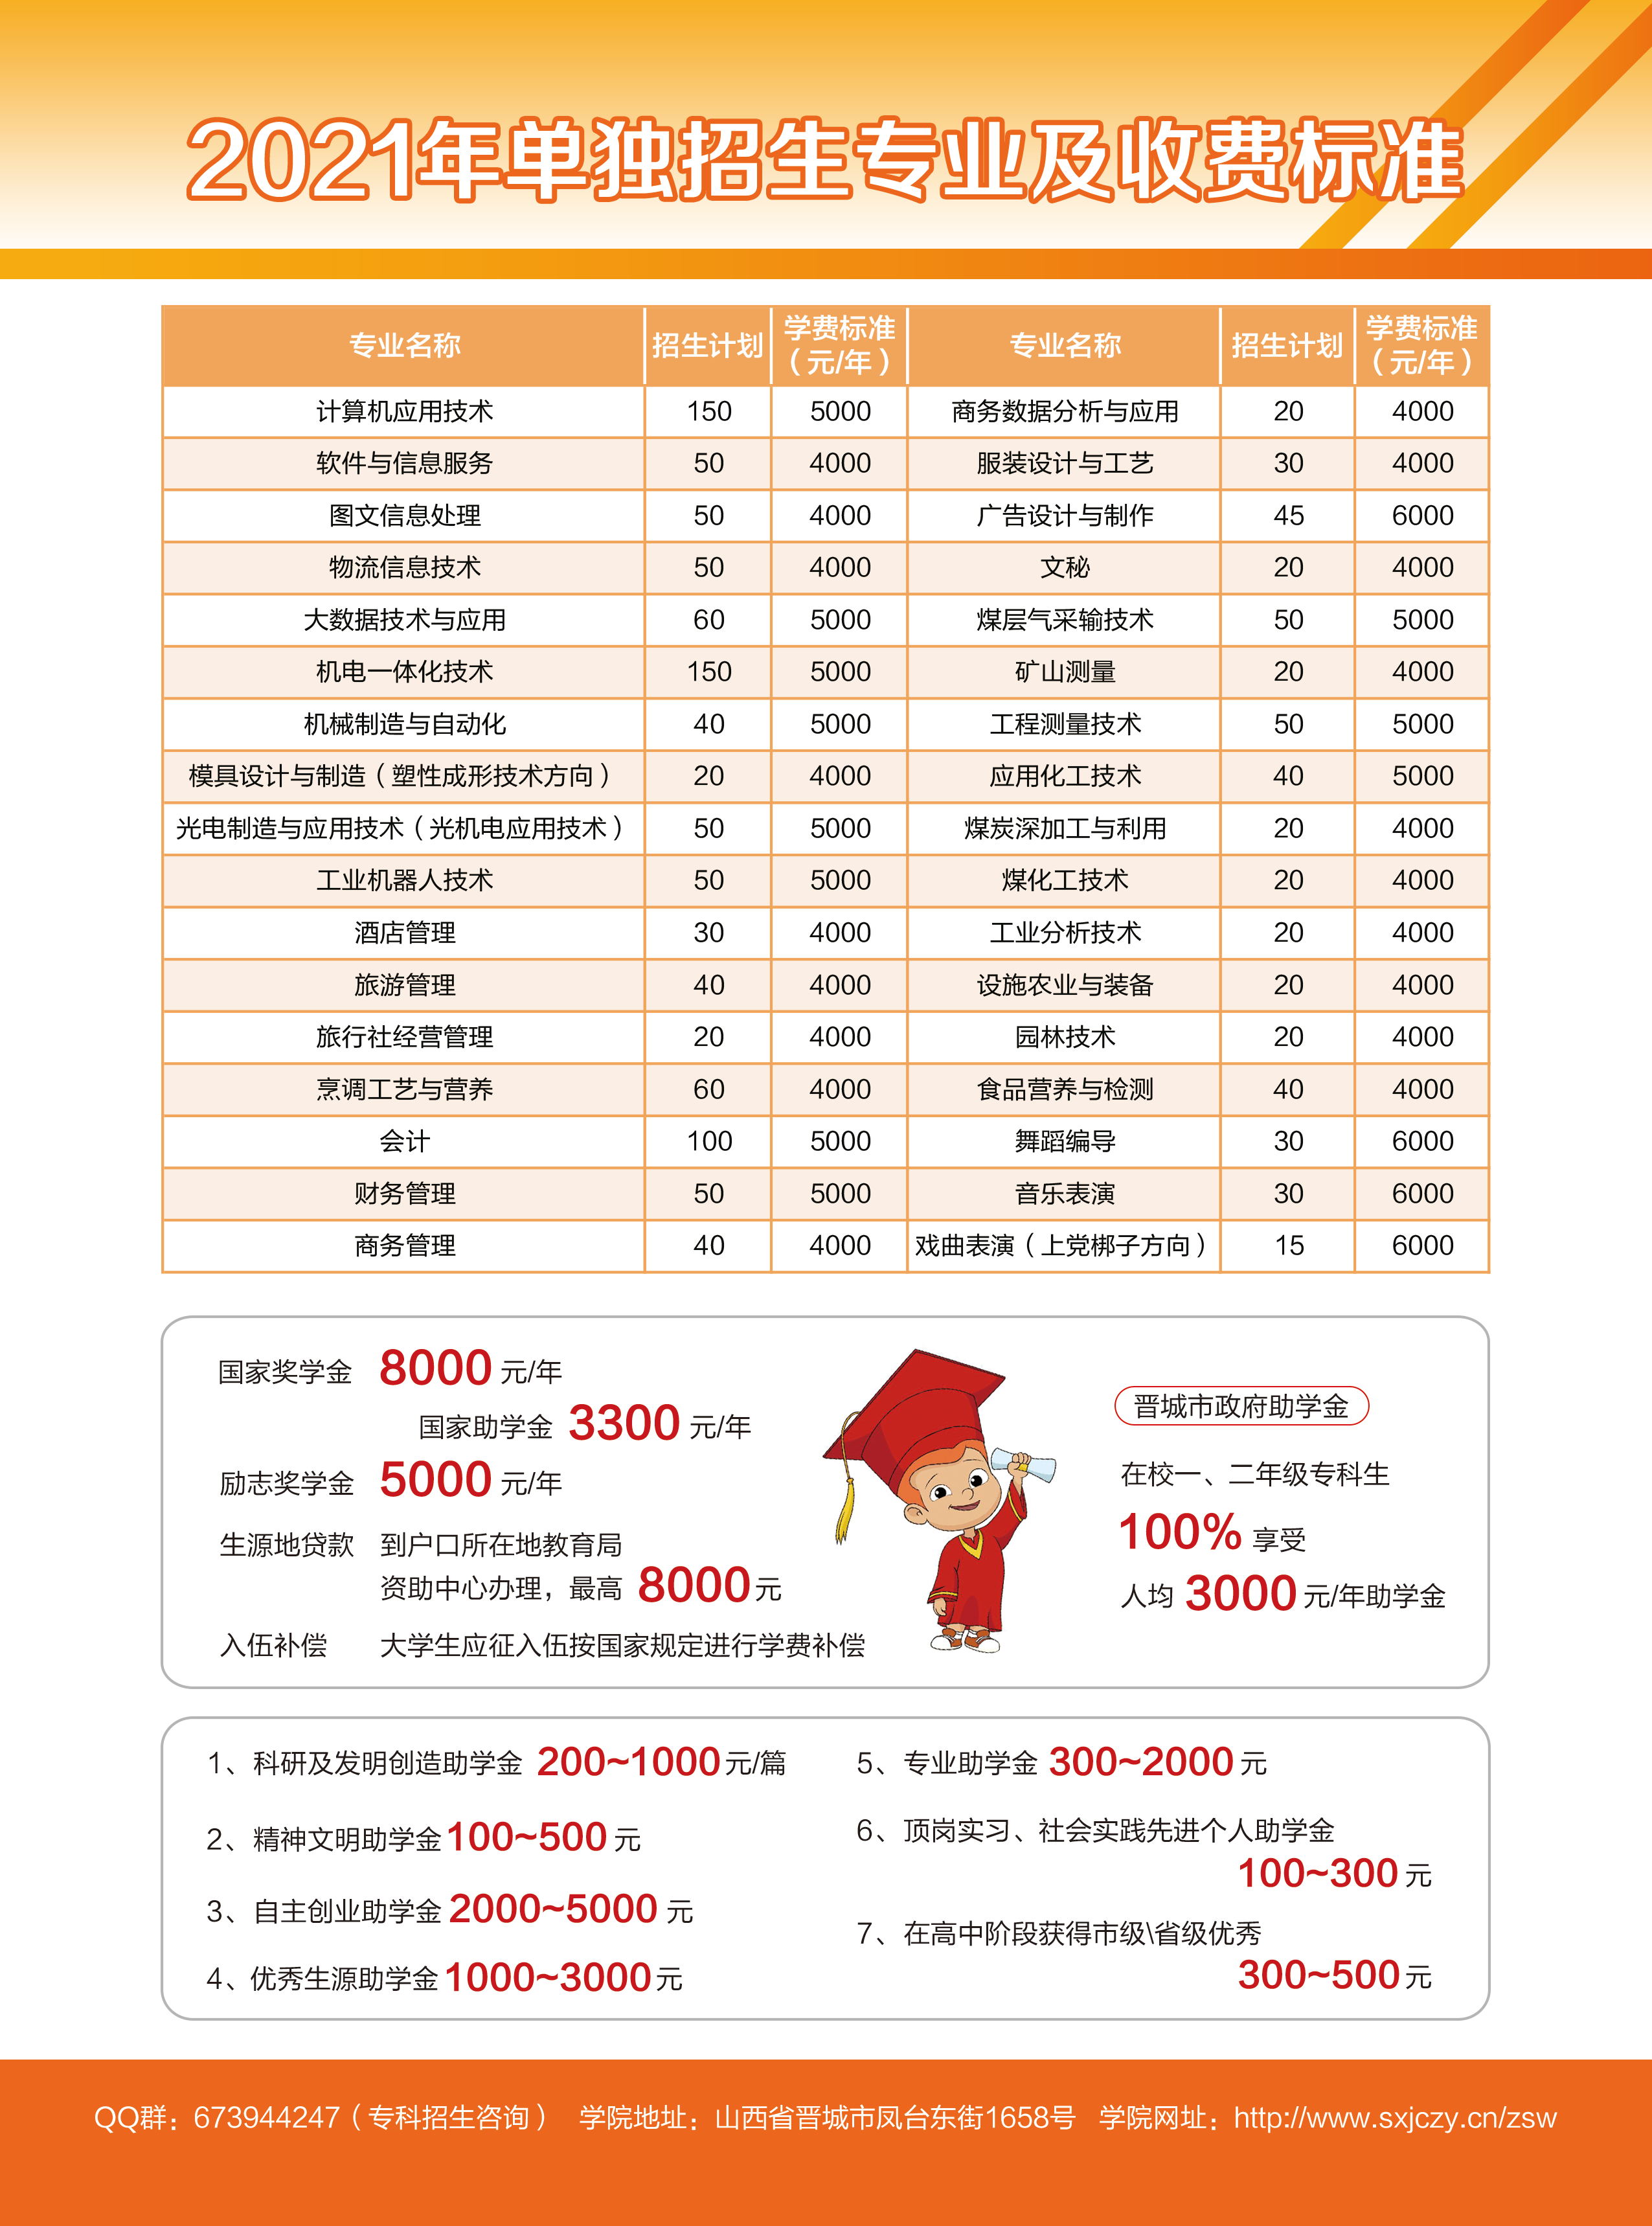 晋城职业技术学院2021年单独招生简章